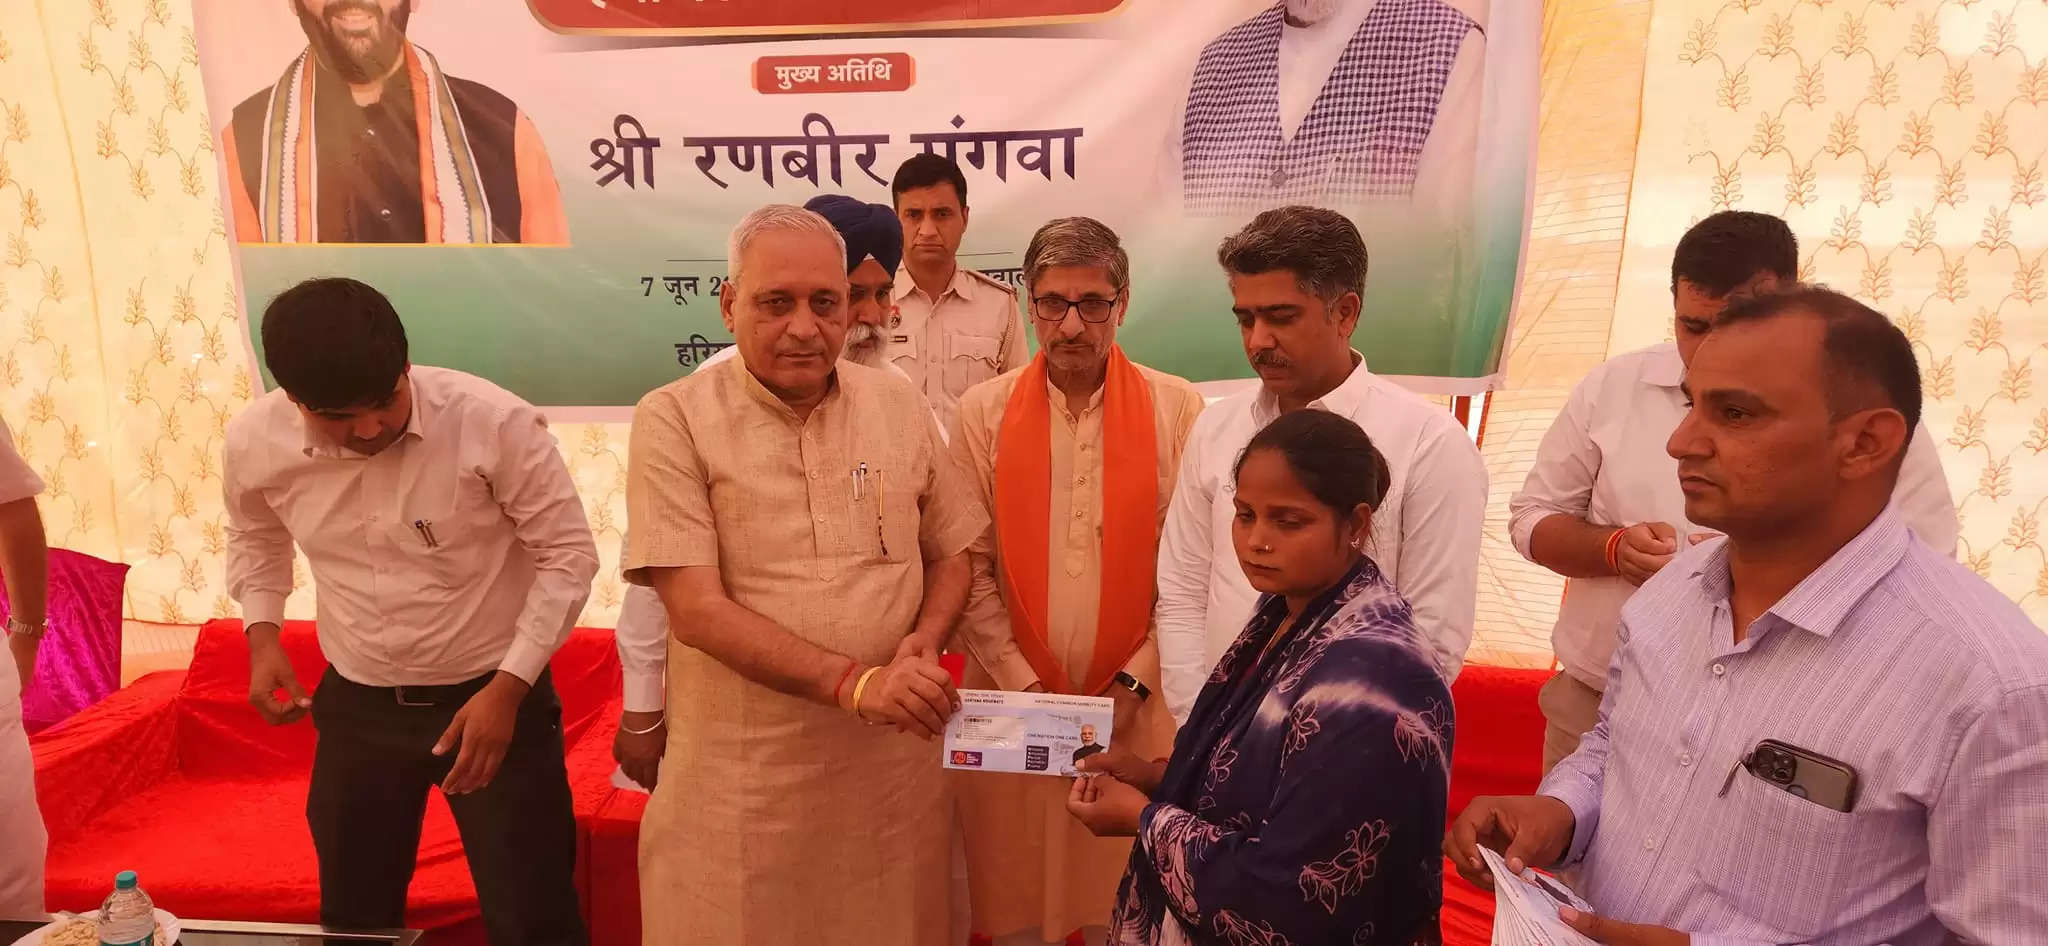 हरियाणा के डबवाली में विधानसभा उपाध्यक्ष रणबीर गंगवा ने लाभार्थियों को वितरित किए हैप्पी कार्ड, ये मिलेगा फायदा